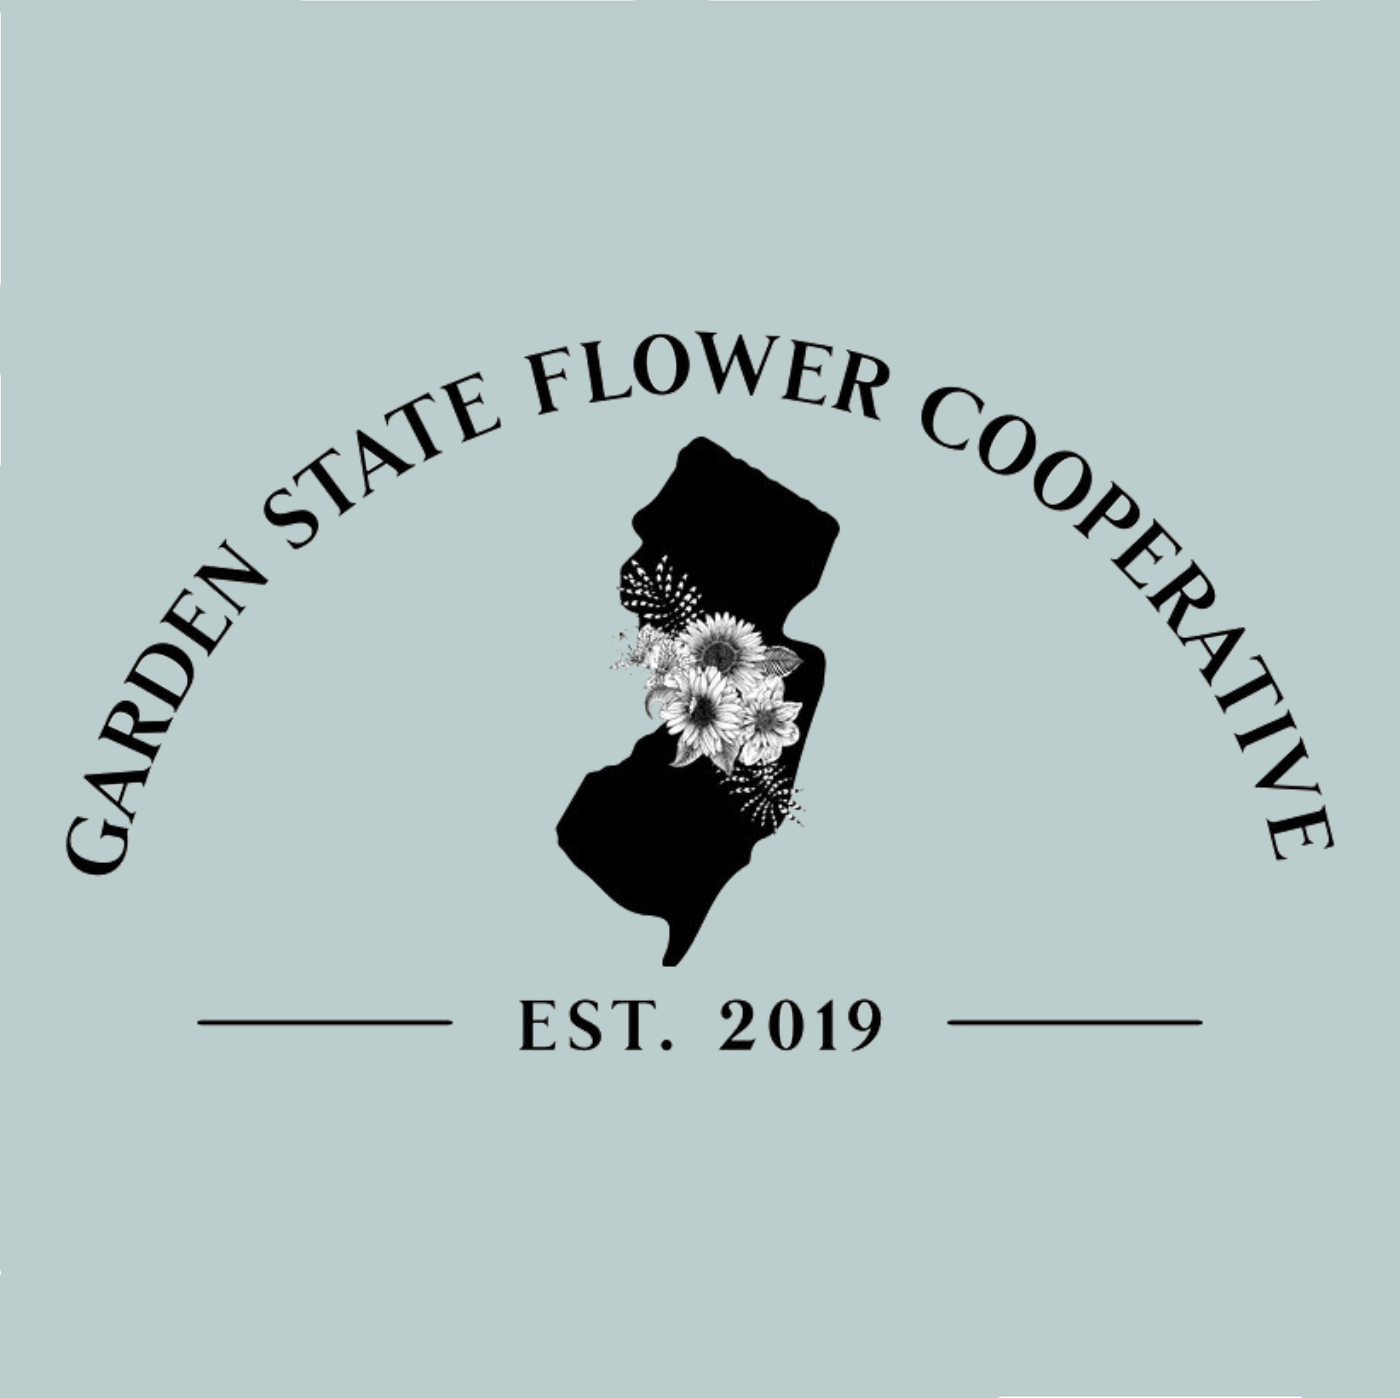 Garden State Flower Cooperative